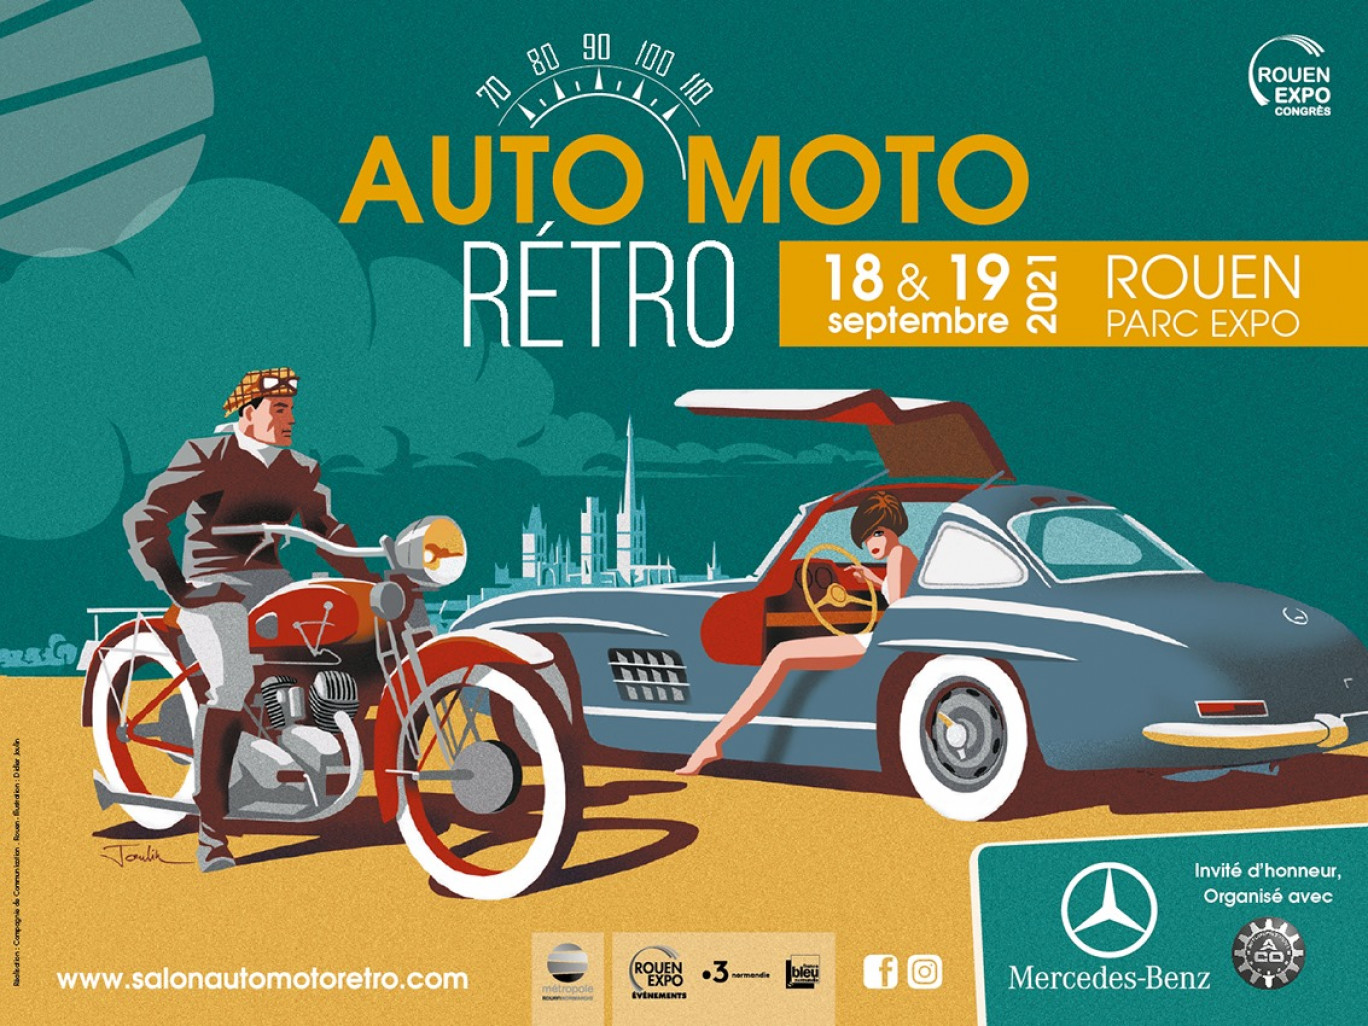 Le salon Auto Moto Retro a lieu ce week-end au Parc des expositions de Rouen. 